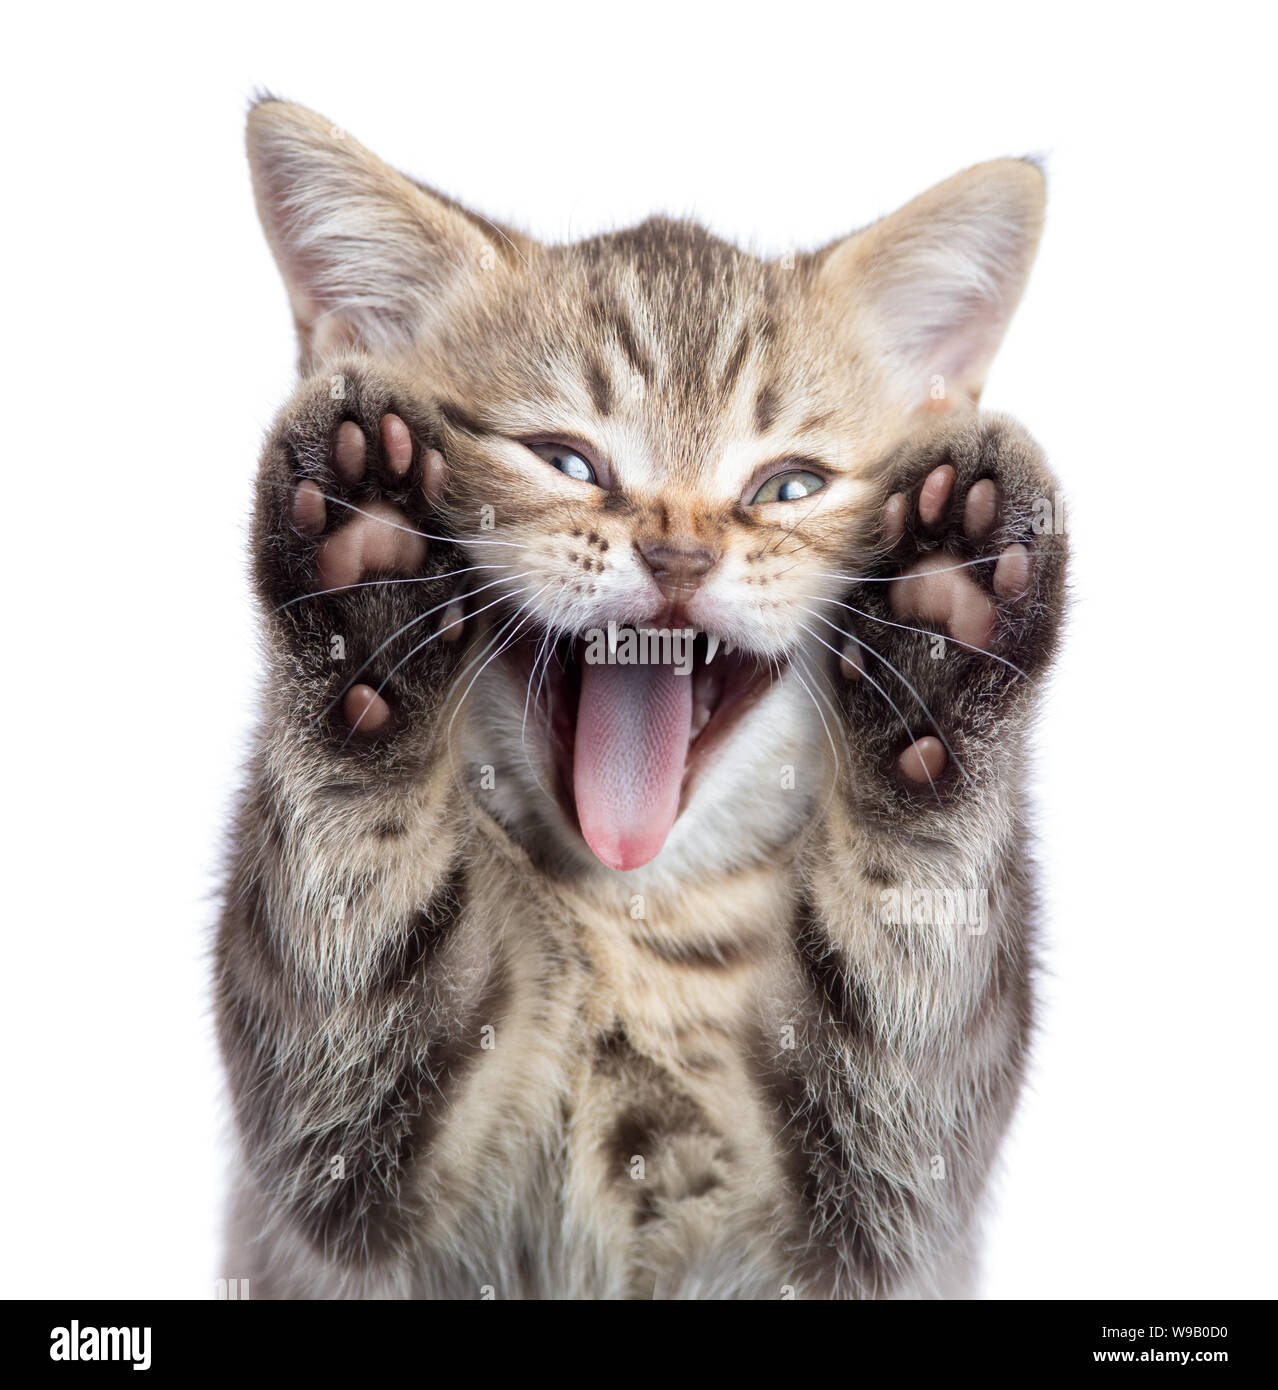 Lustige Kätzchen Katze Portrait mit offenen Mund und zwei Pfoten uoisolated Stockfoto